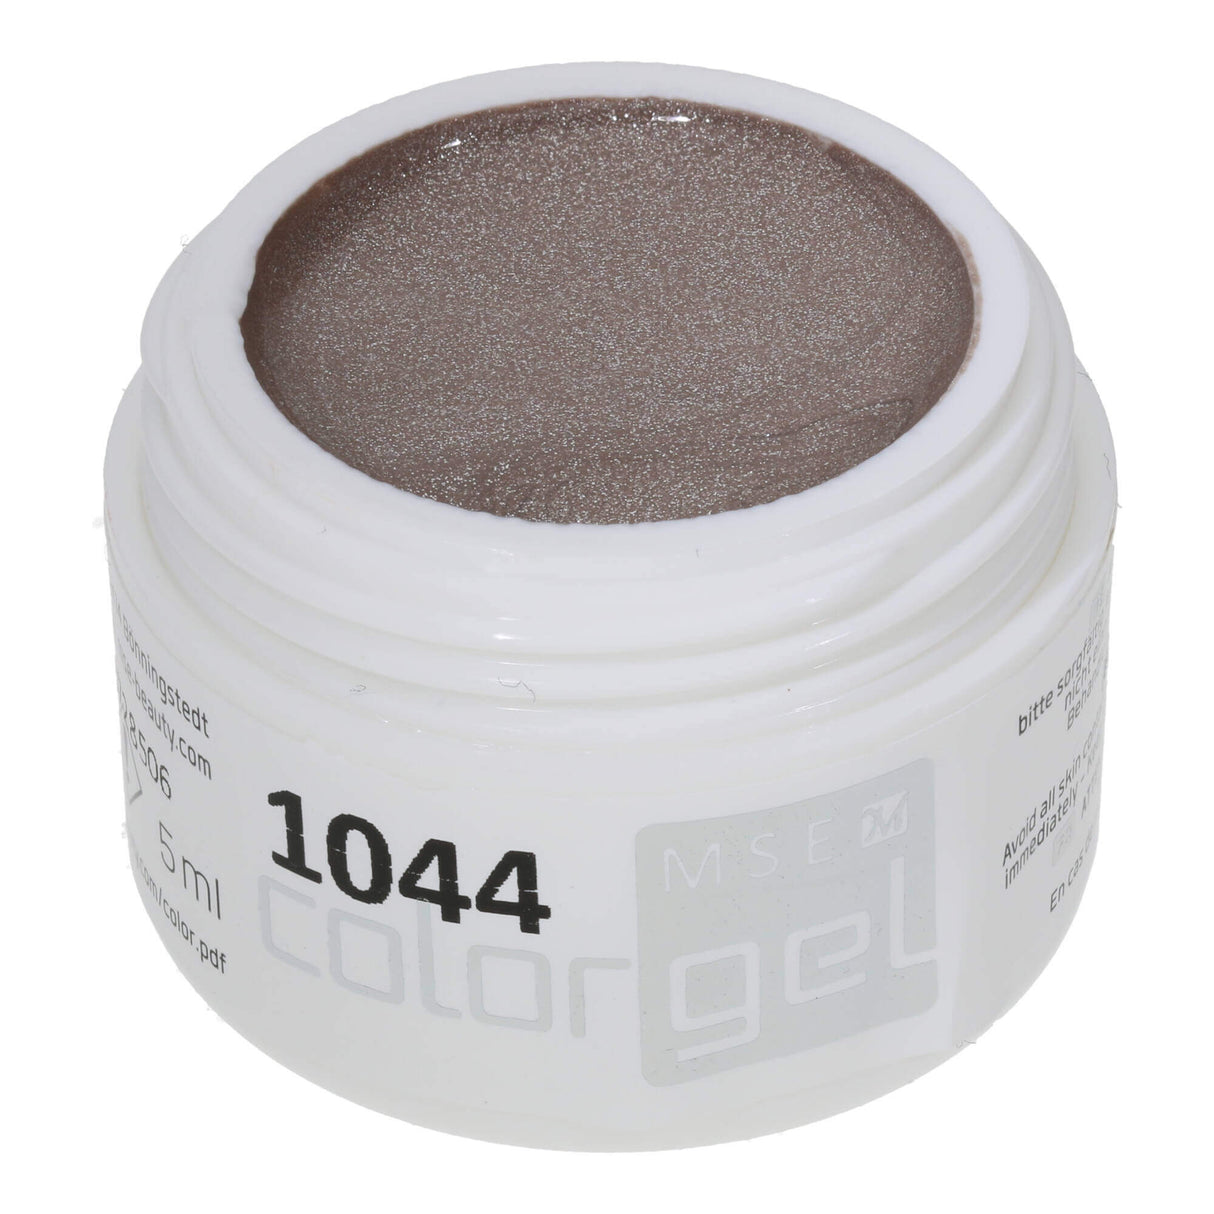 #1044 EFFECT gel màu 5ml màu be